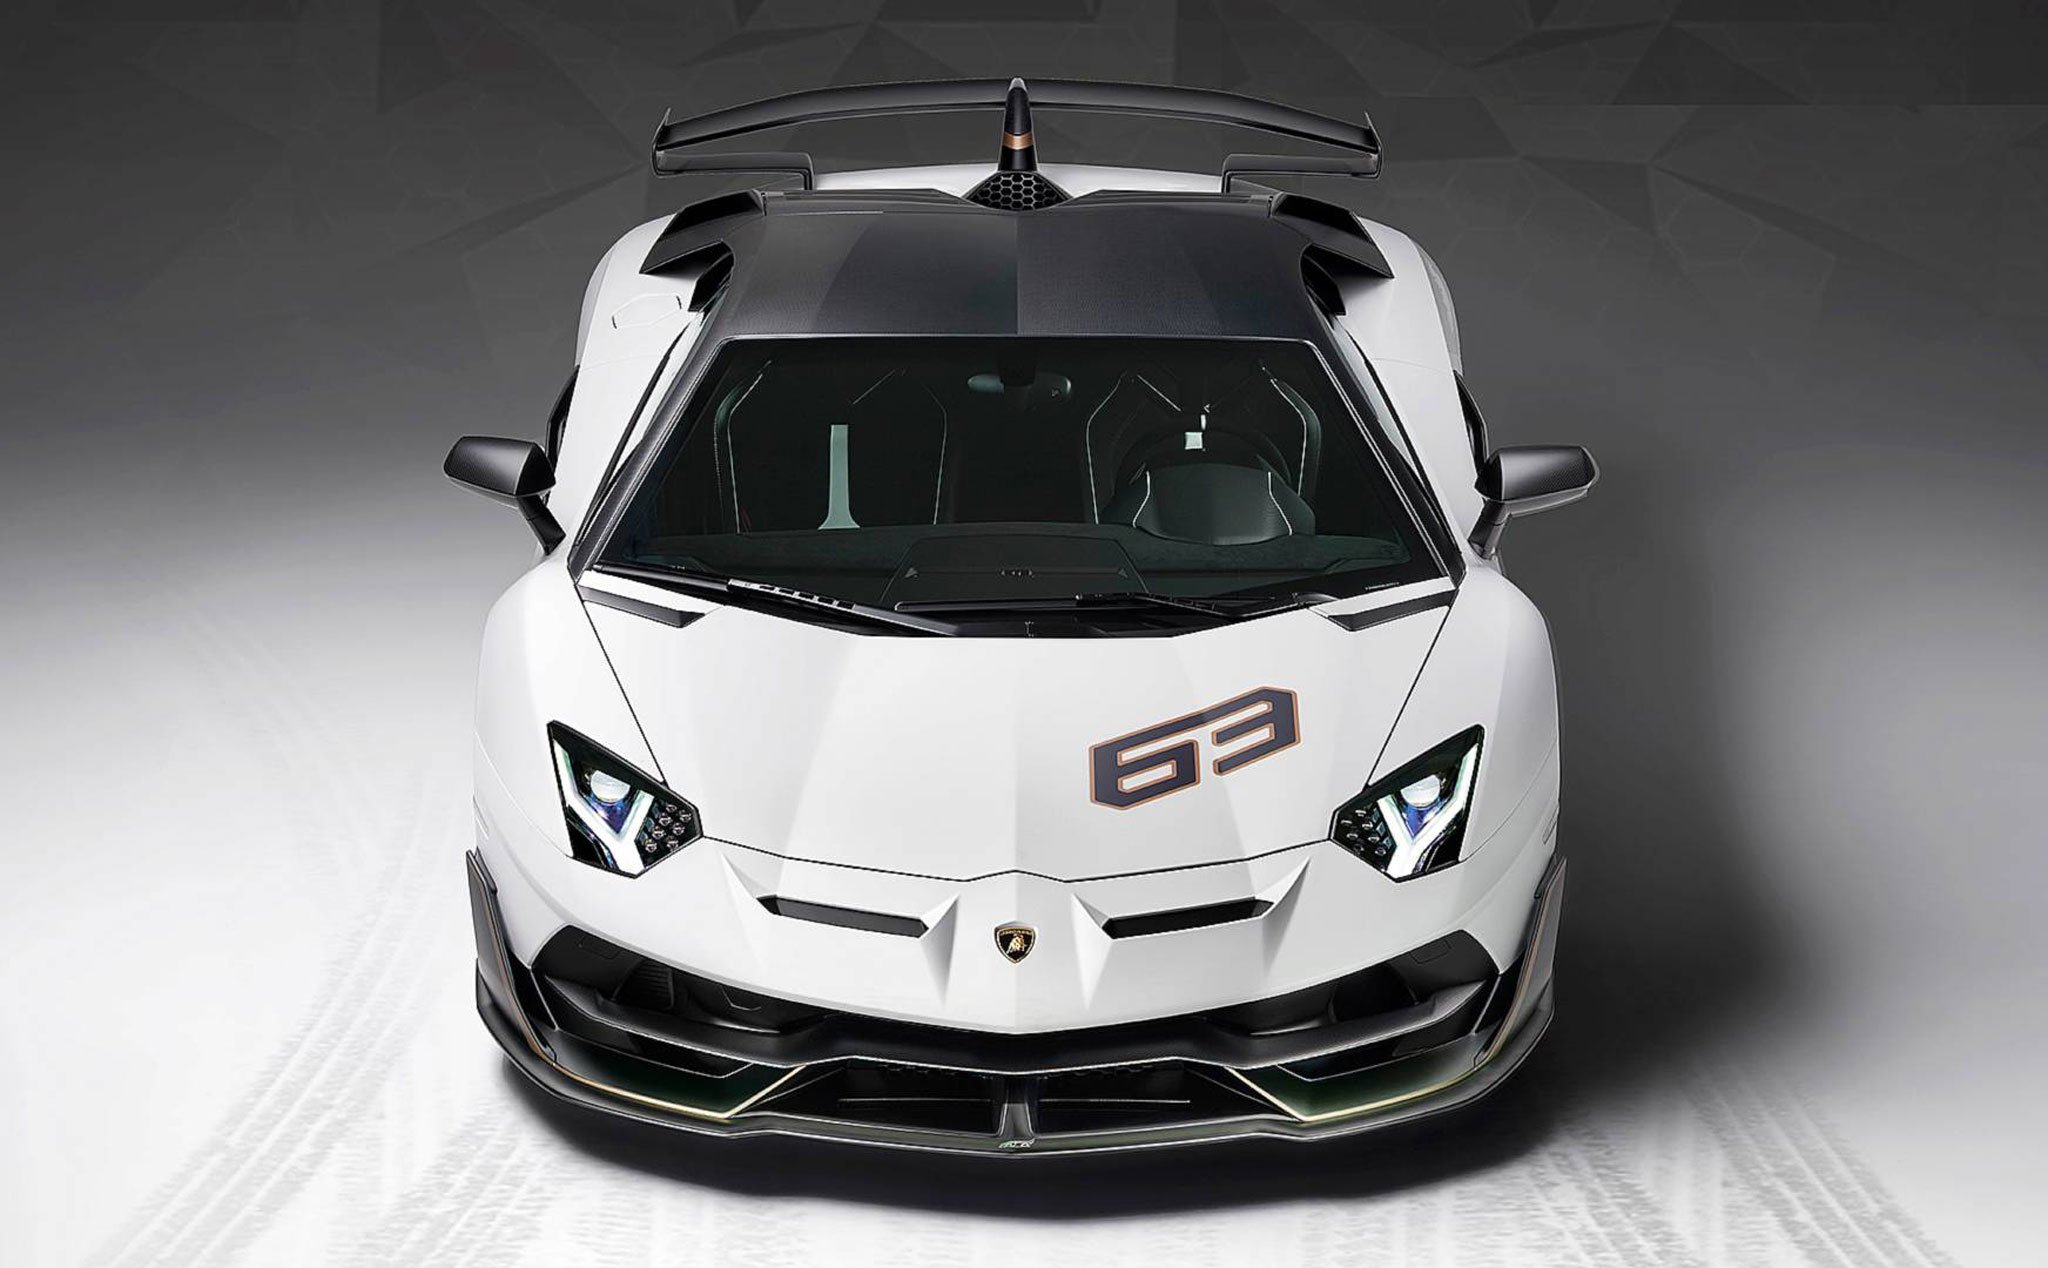 Lamborghini triệu hồi Aventador SVJ vì lỗi tay nắm cửa có thể nhốt chủ nhân bên trong xe